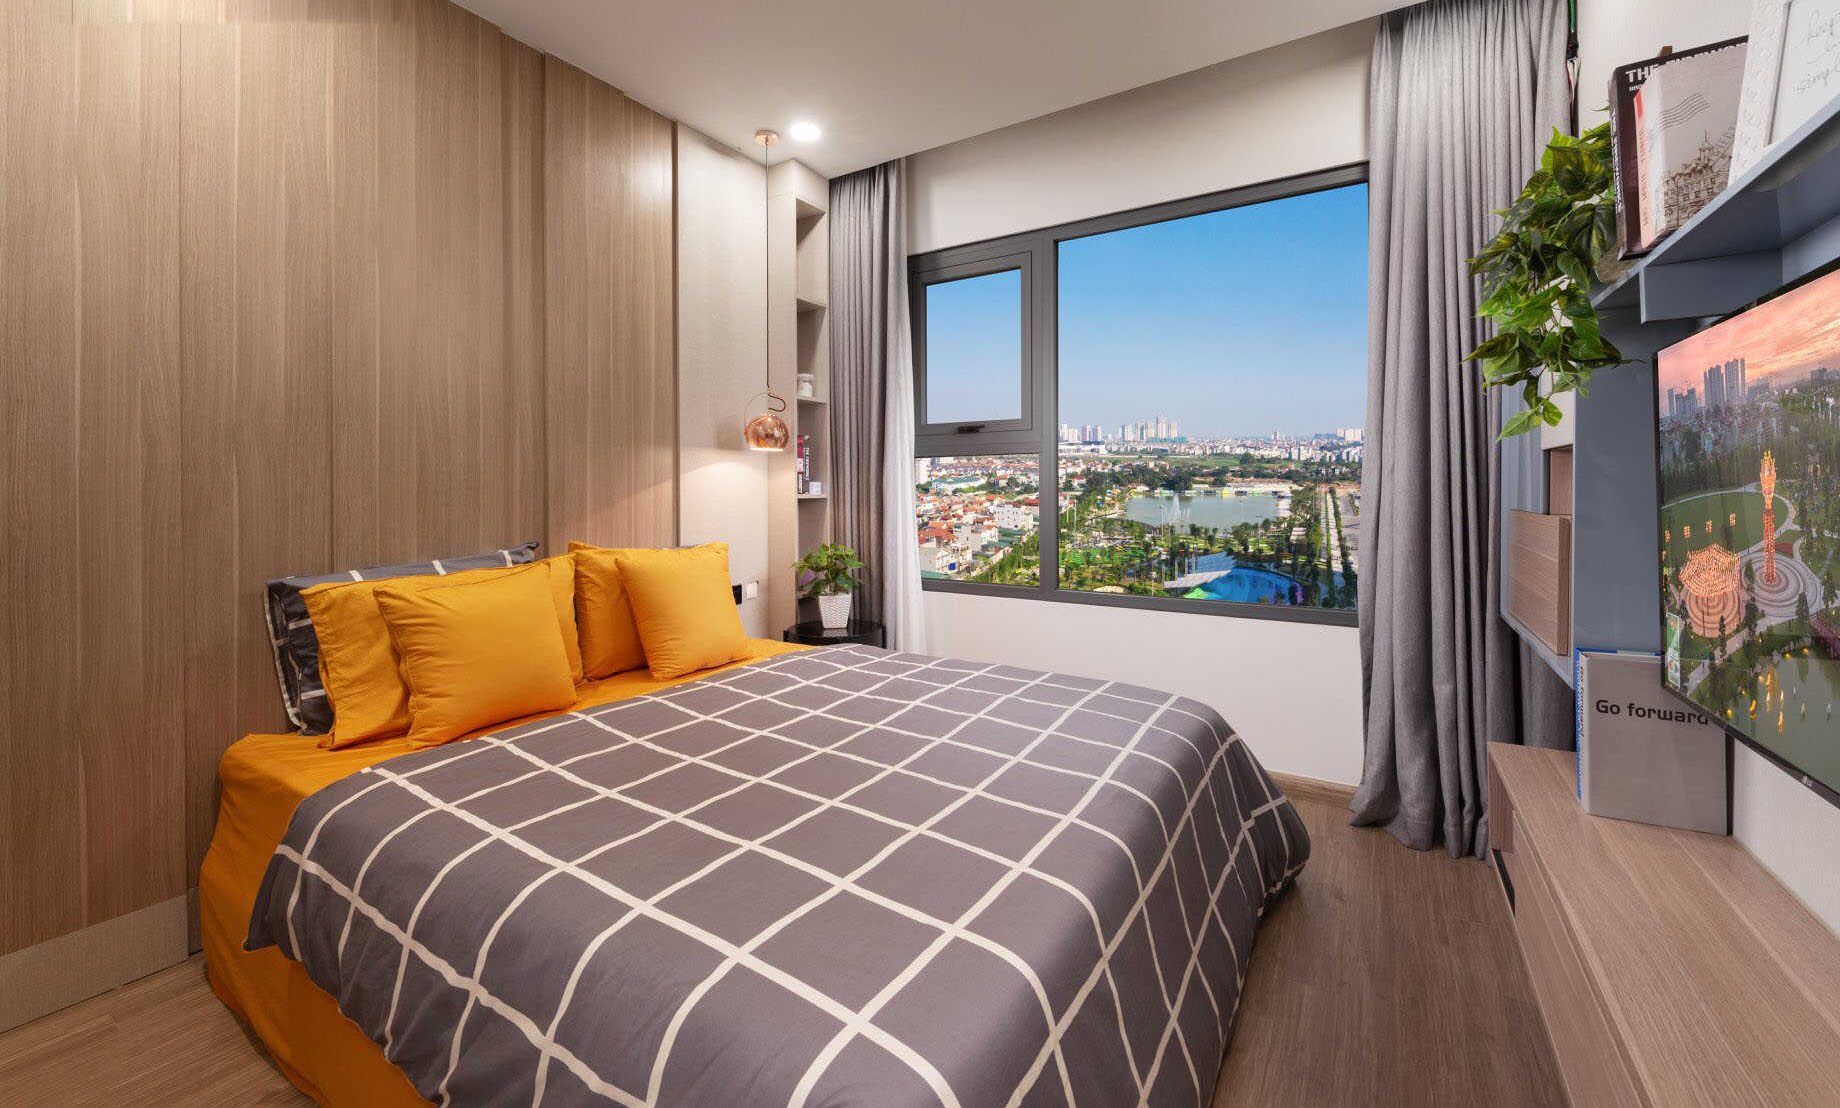 Thiết kế căn hộ chung cư Vinhomes Smart City 8.5